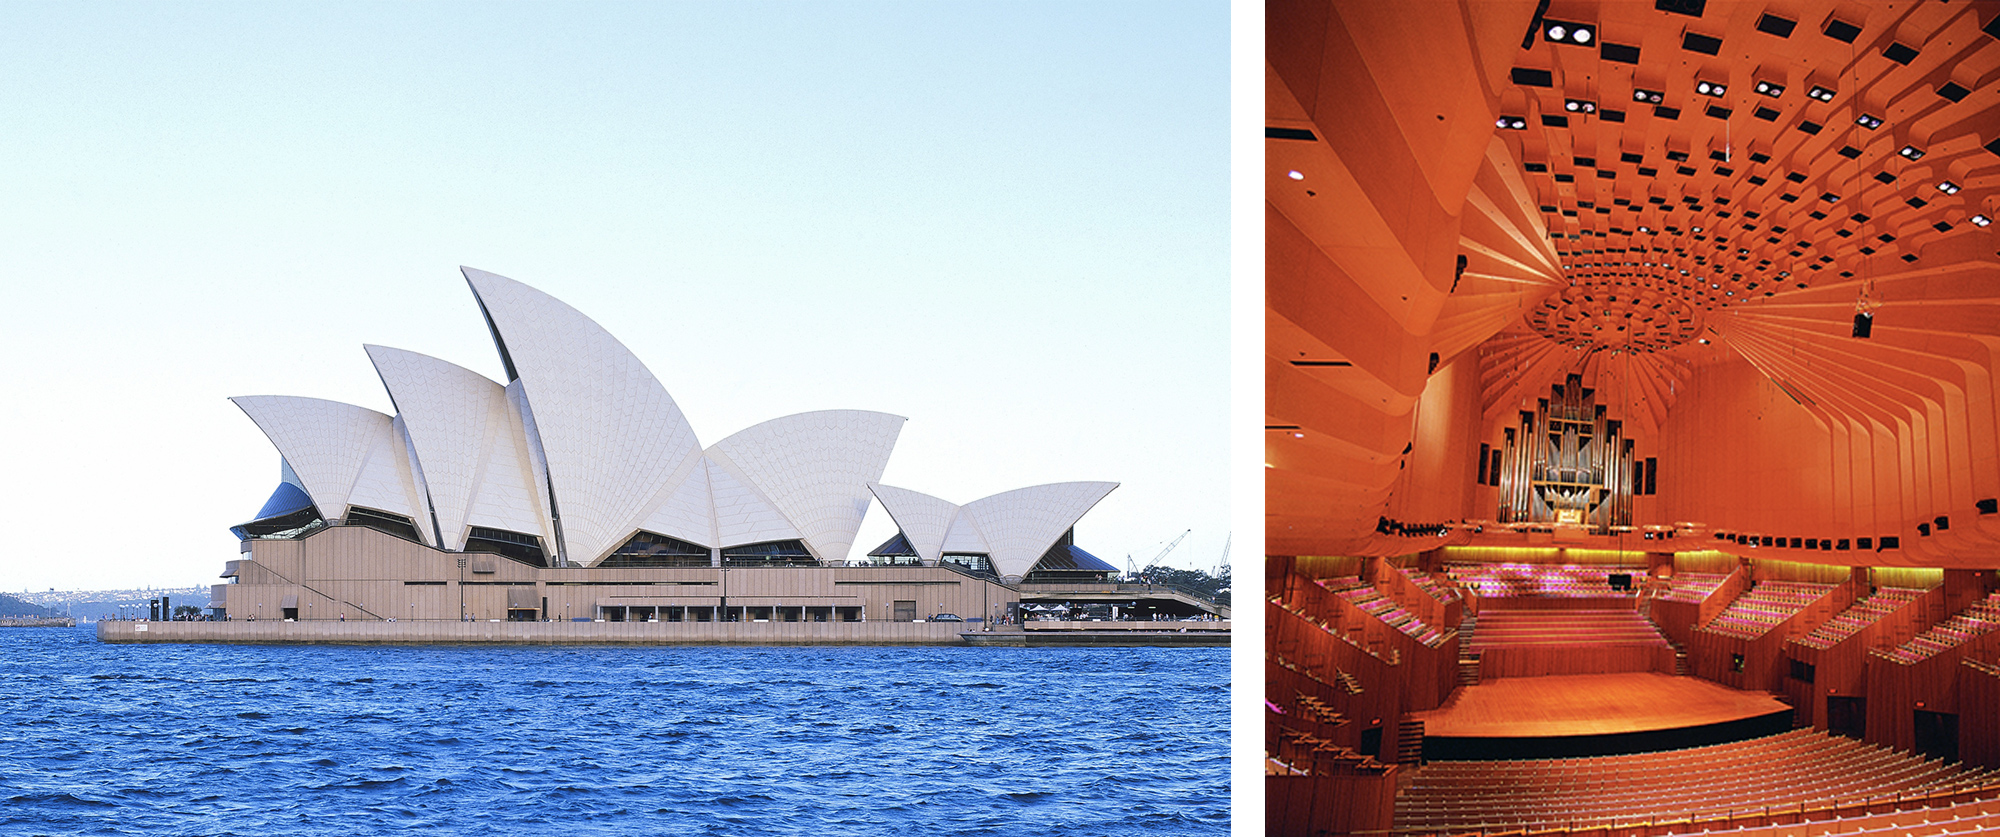 Photography: courtesy of Sydney Opera House